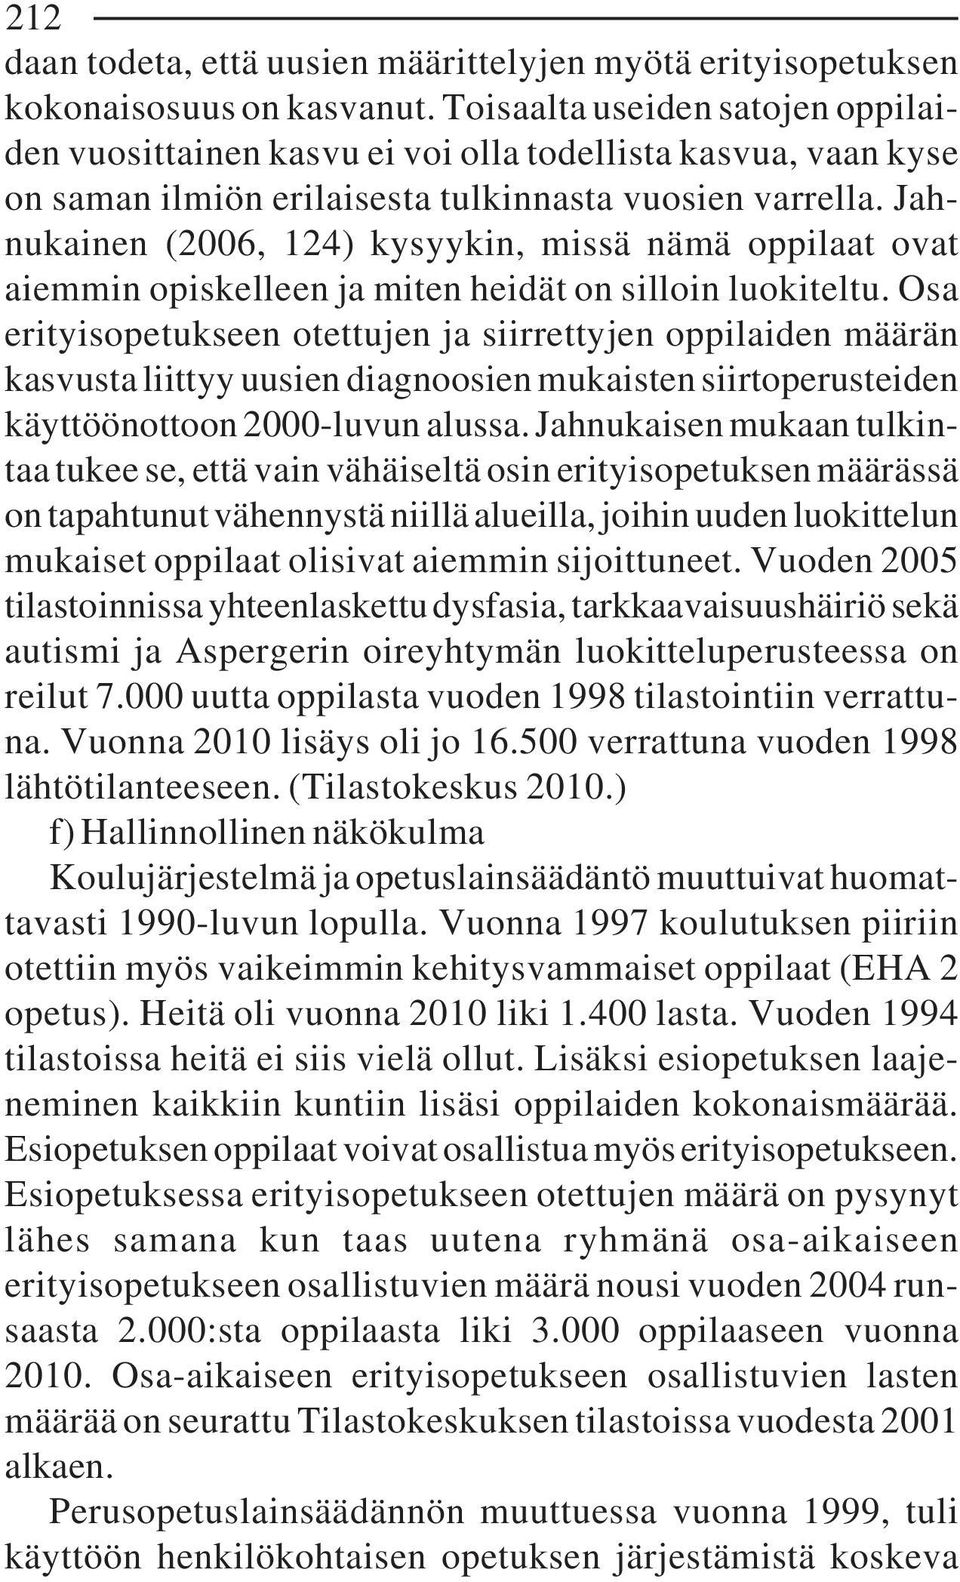 Jahnukainen (2006, 124) kysyykin, missä nämä oppilaat ovat aiemmin opiskelleen ja miten heidät on silloin luokiteltu.